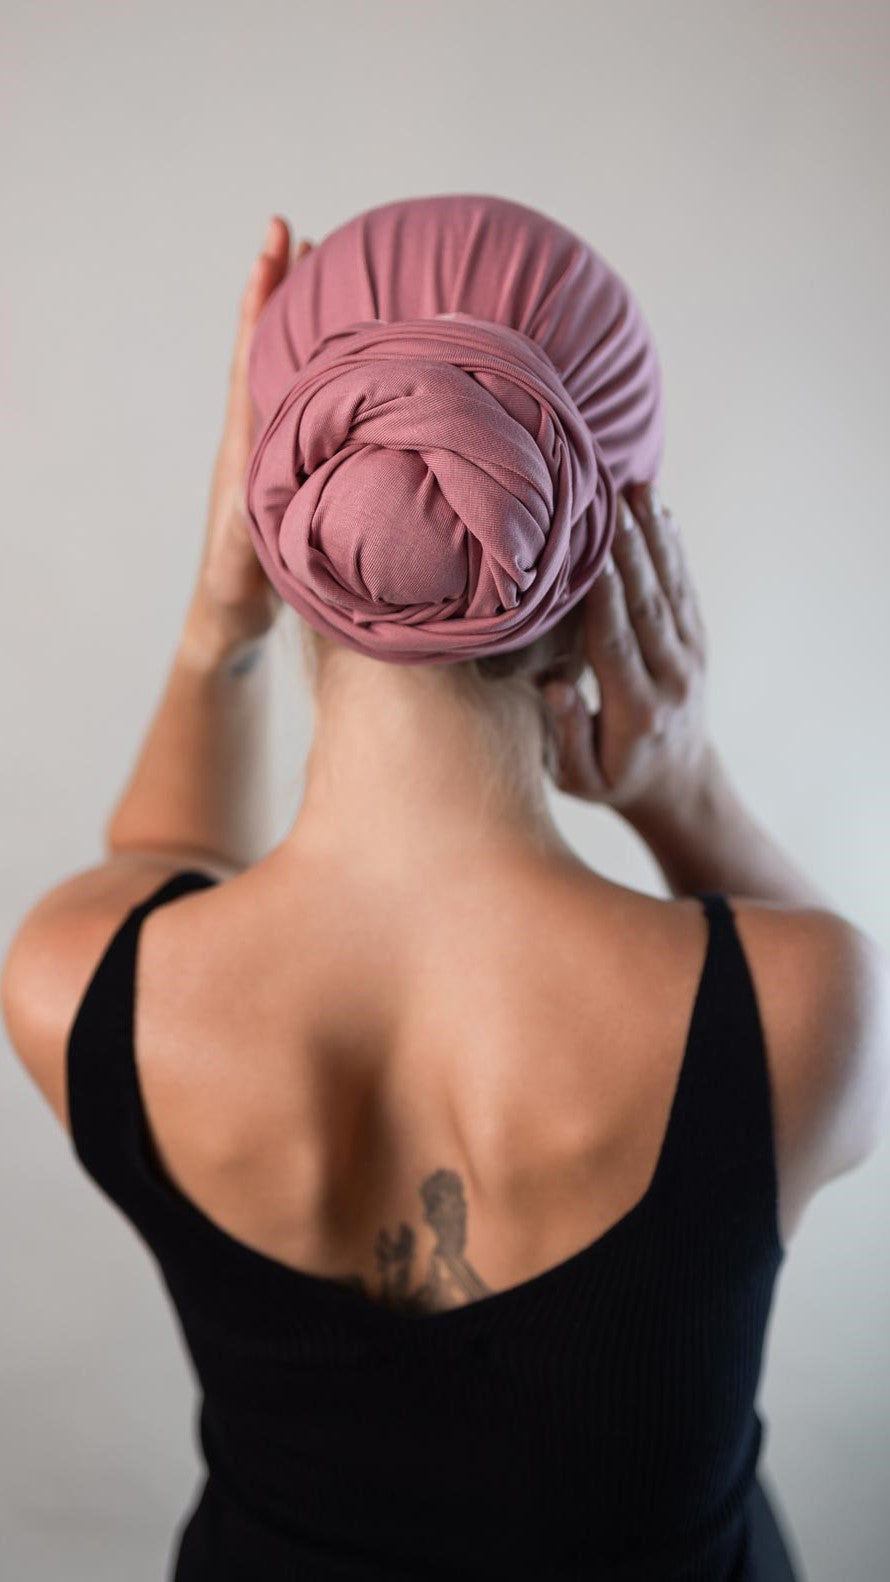 Rückansicht von einer hübschen Frau, die ein rosa Bambus Haar Handtuch von Curly'N'Covered als Turban trägt und dabei ihre Hände um den Turban legt